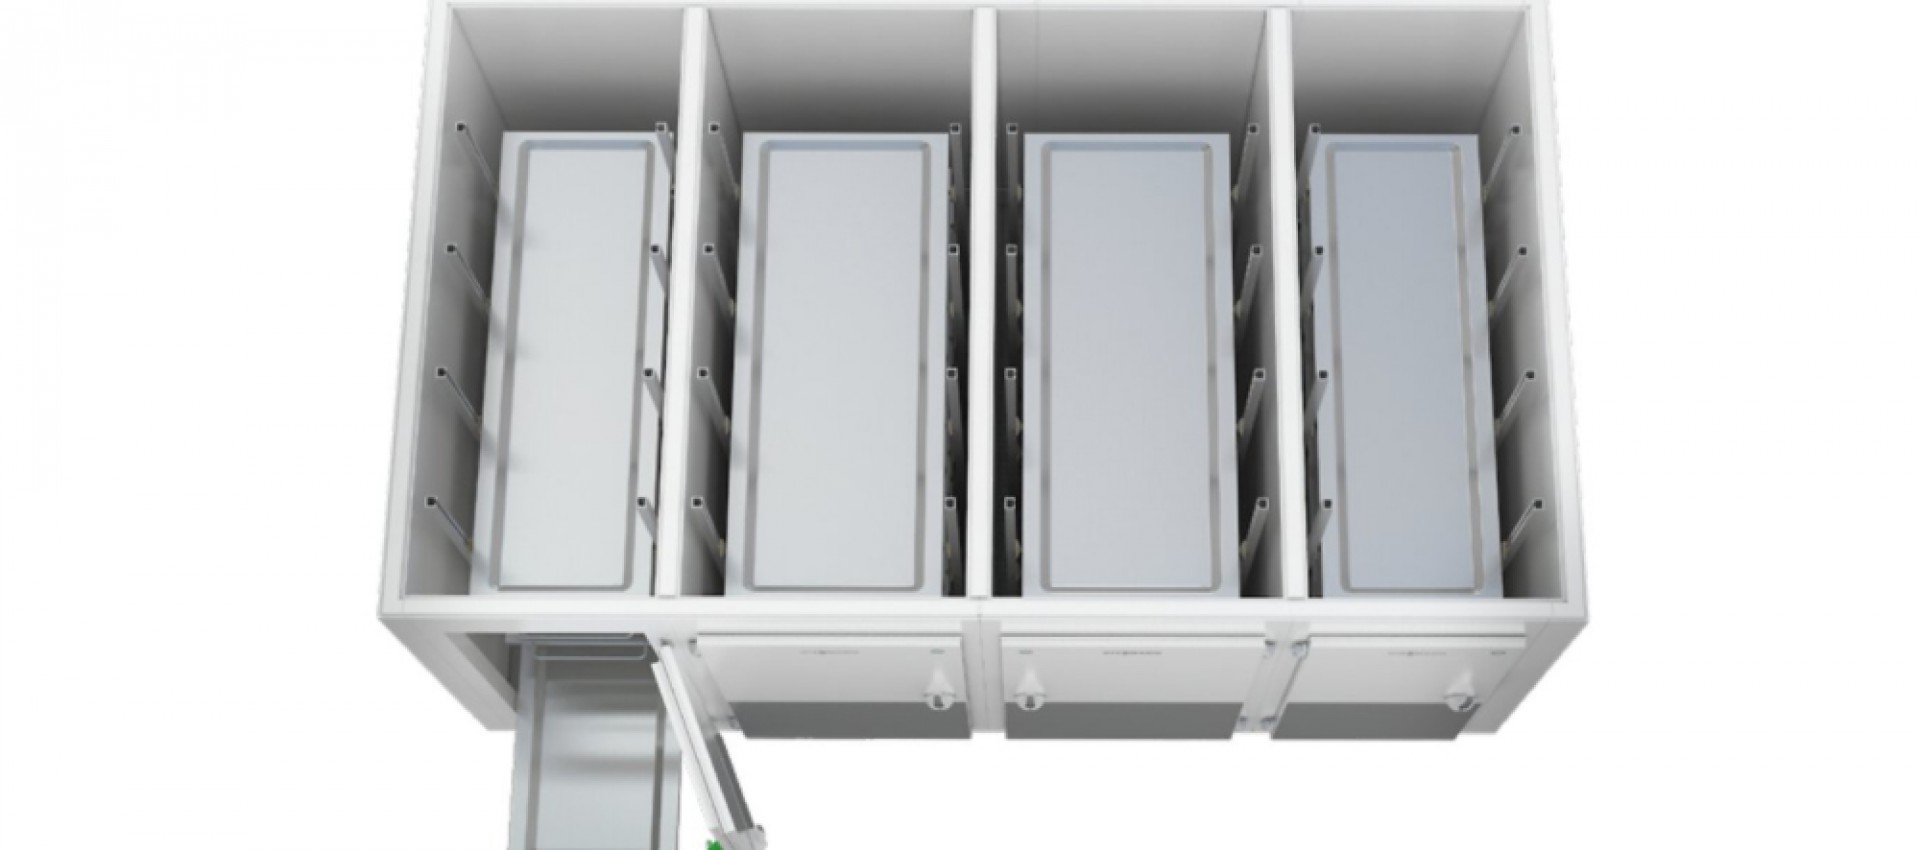 Ein Kühlraumangebot mit voller Flexibilität in Konfiguration und Gestaltung mit modularer Erweiterba